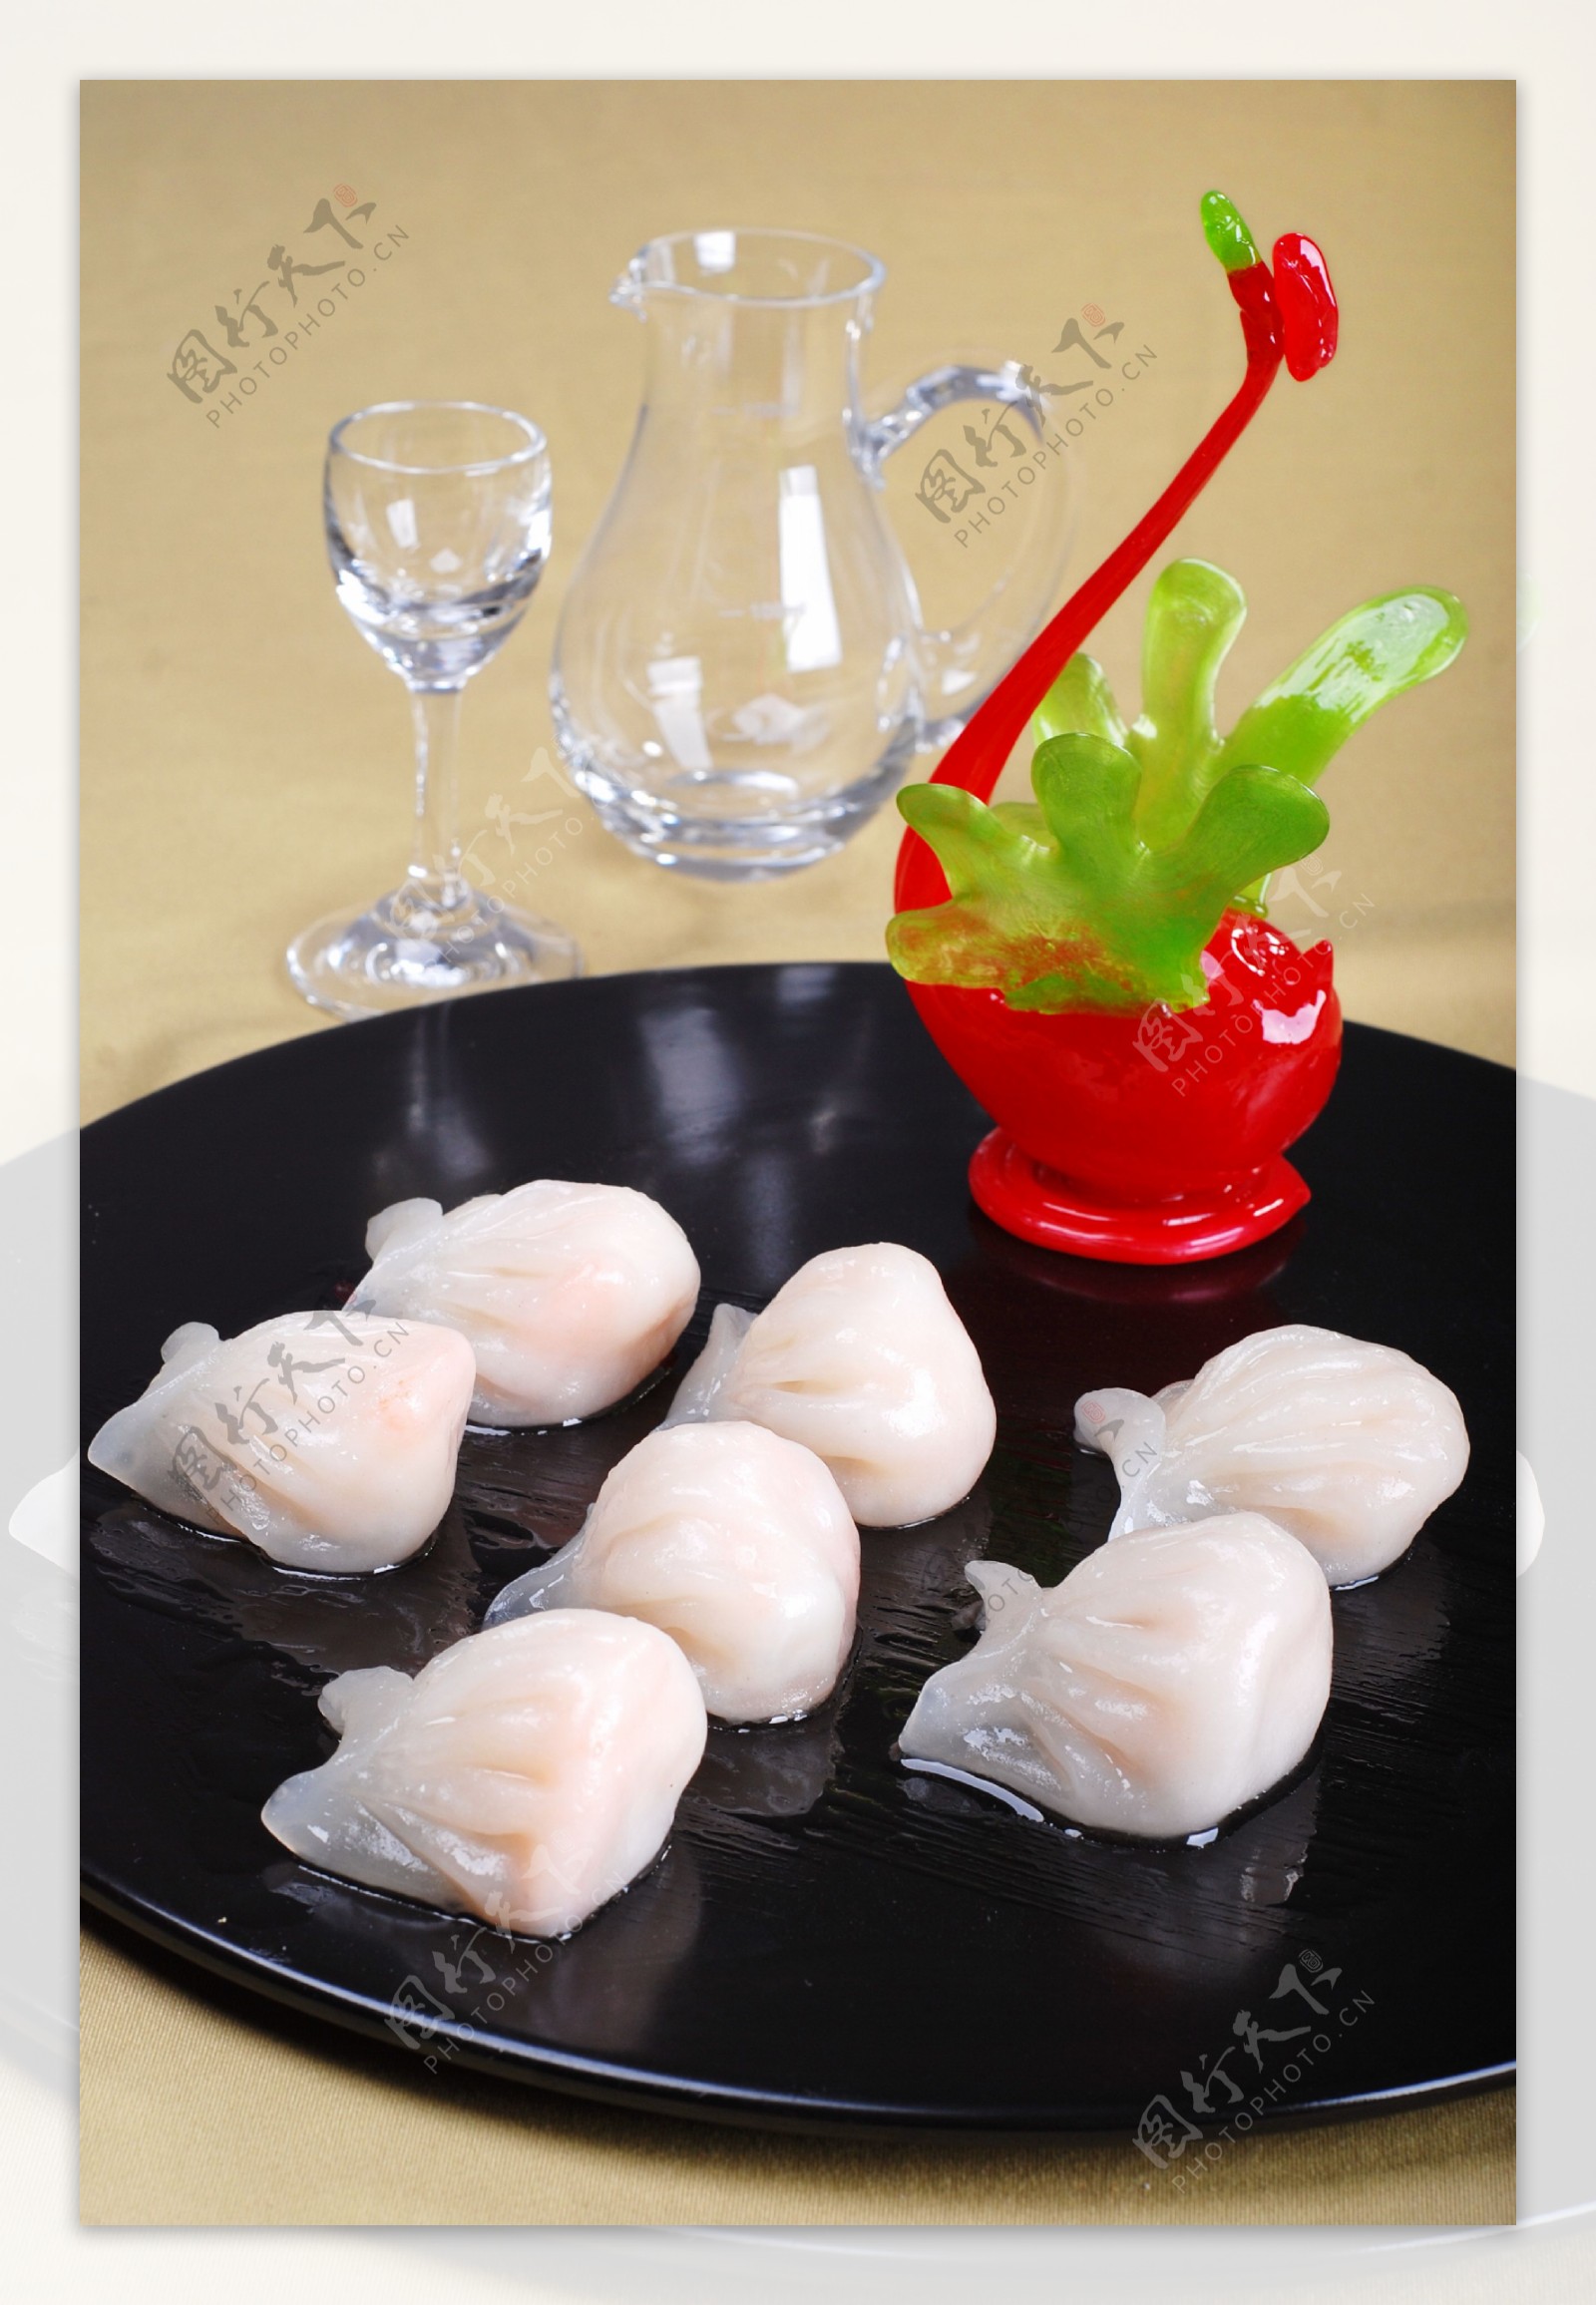 水晶虾饺图片